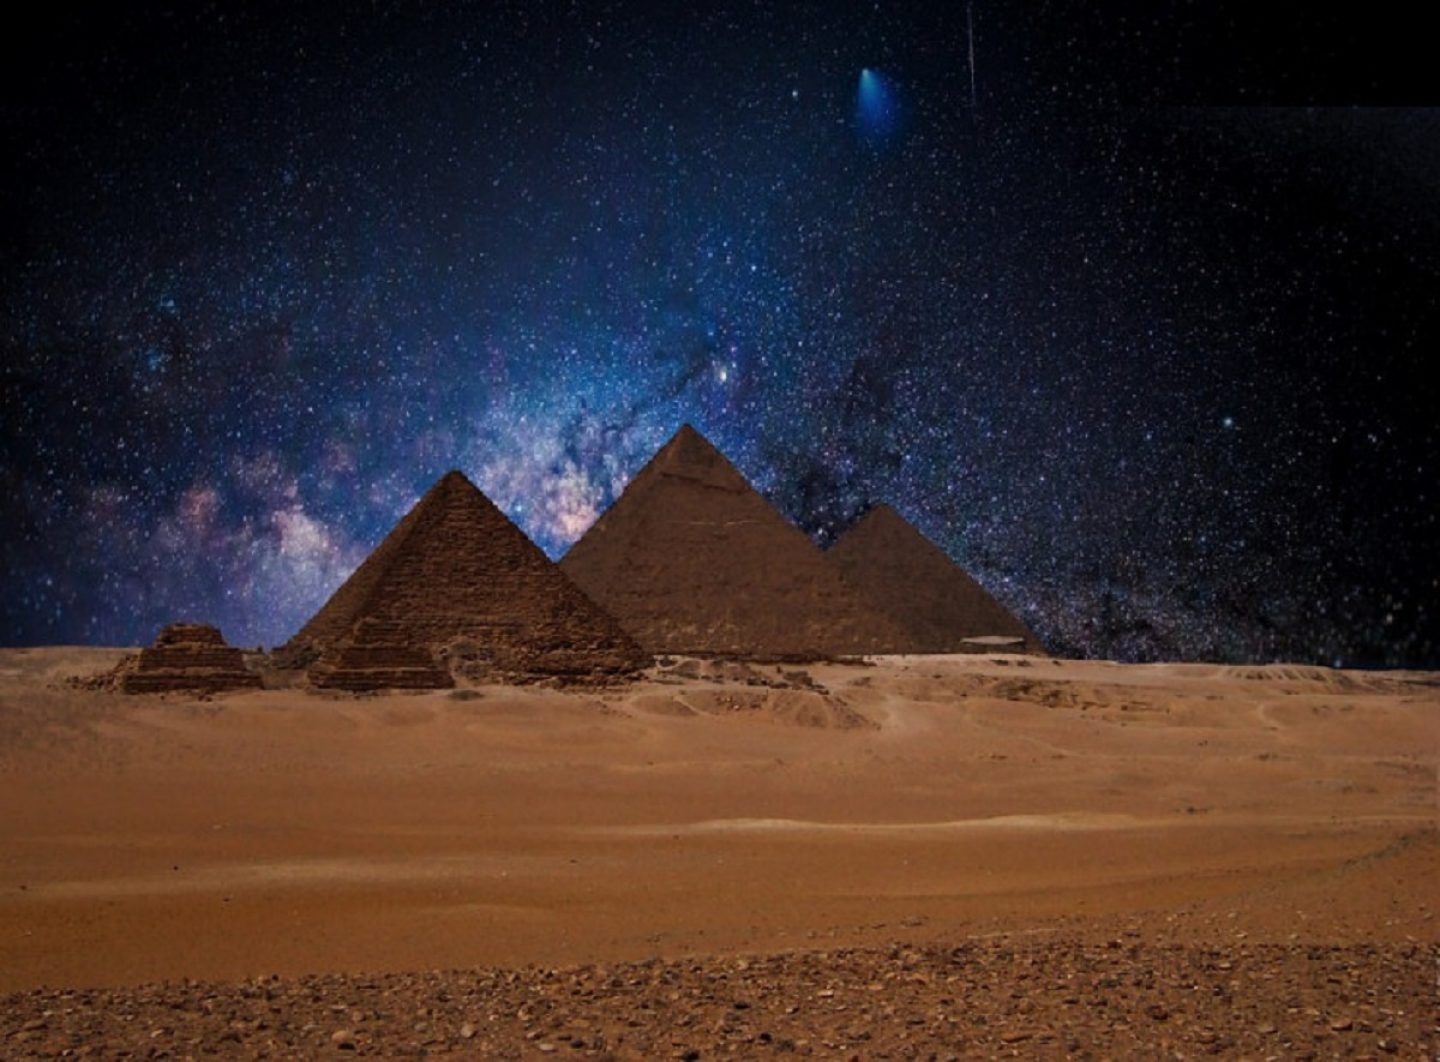 Sự thật Ai Cập: Ai Cập - một điểm đến của những bí ẩn lịch sử và văn hóa. Nơi đây đã để lại nhiều câu hỏi chưa có lời giải đáp cho đến tận ngày nay. Hãy đến để khám phá sự thật đằng sau những bí ẩn ấy và hiểu rõ hơn về lịch sử và văn hóa Ai Cập.